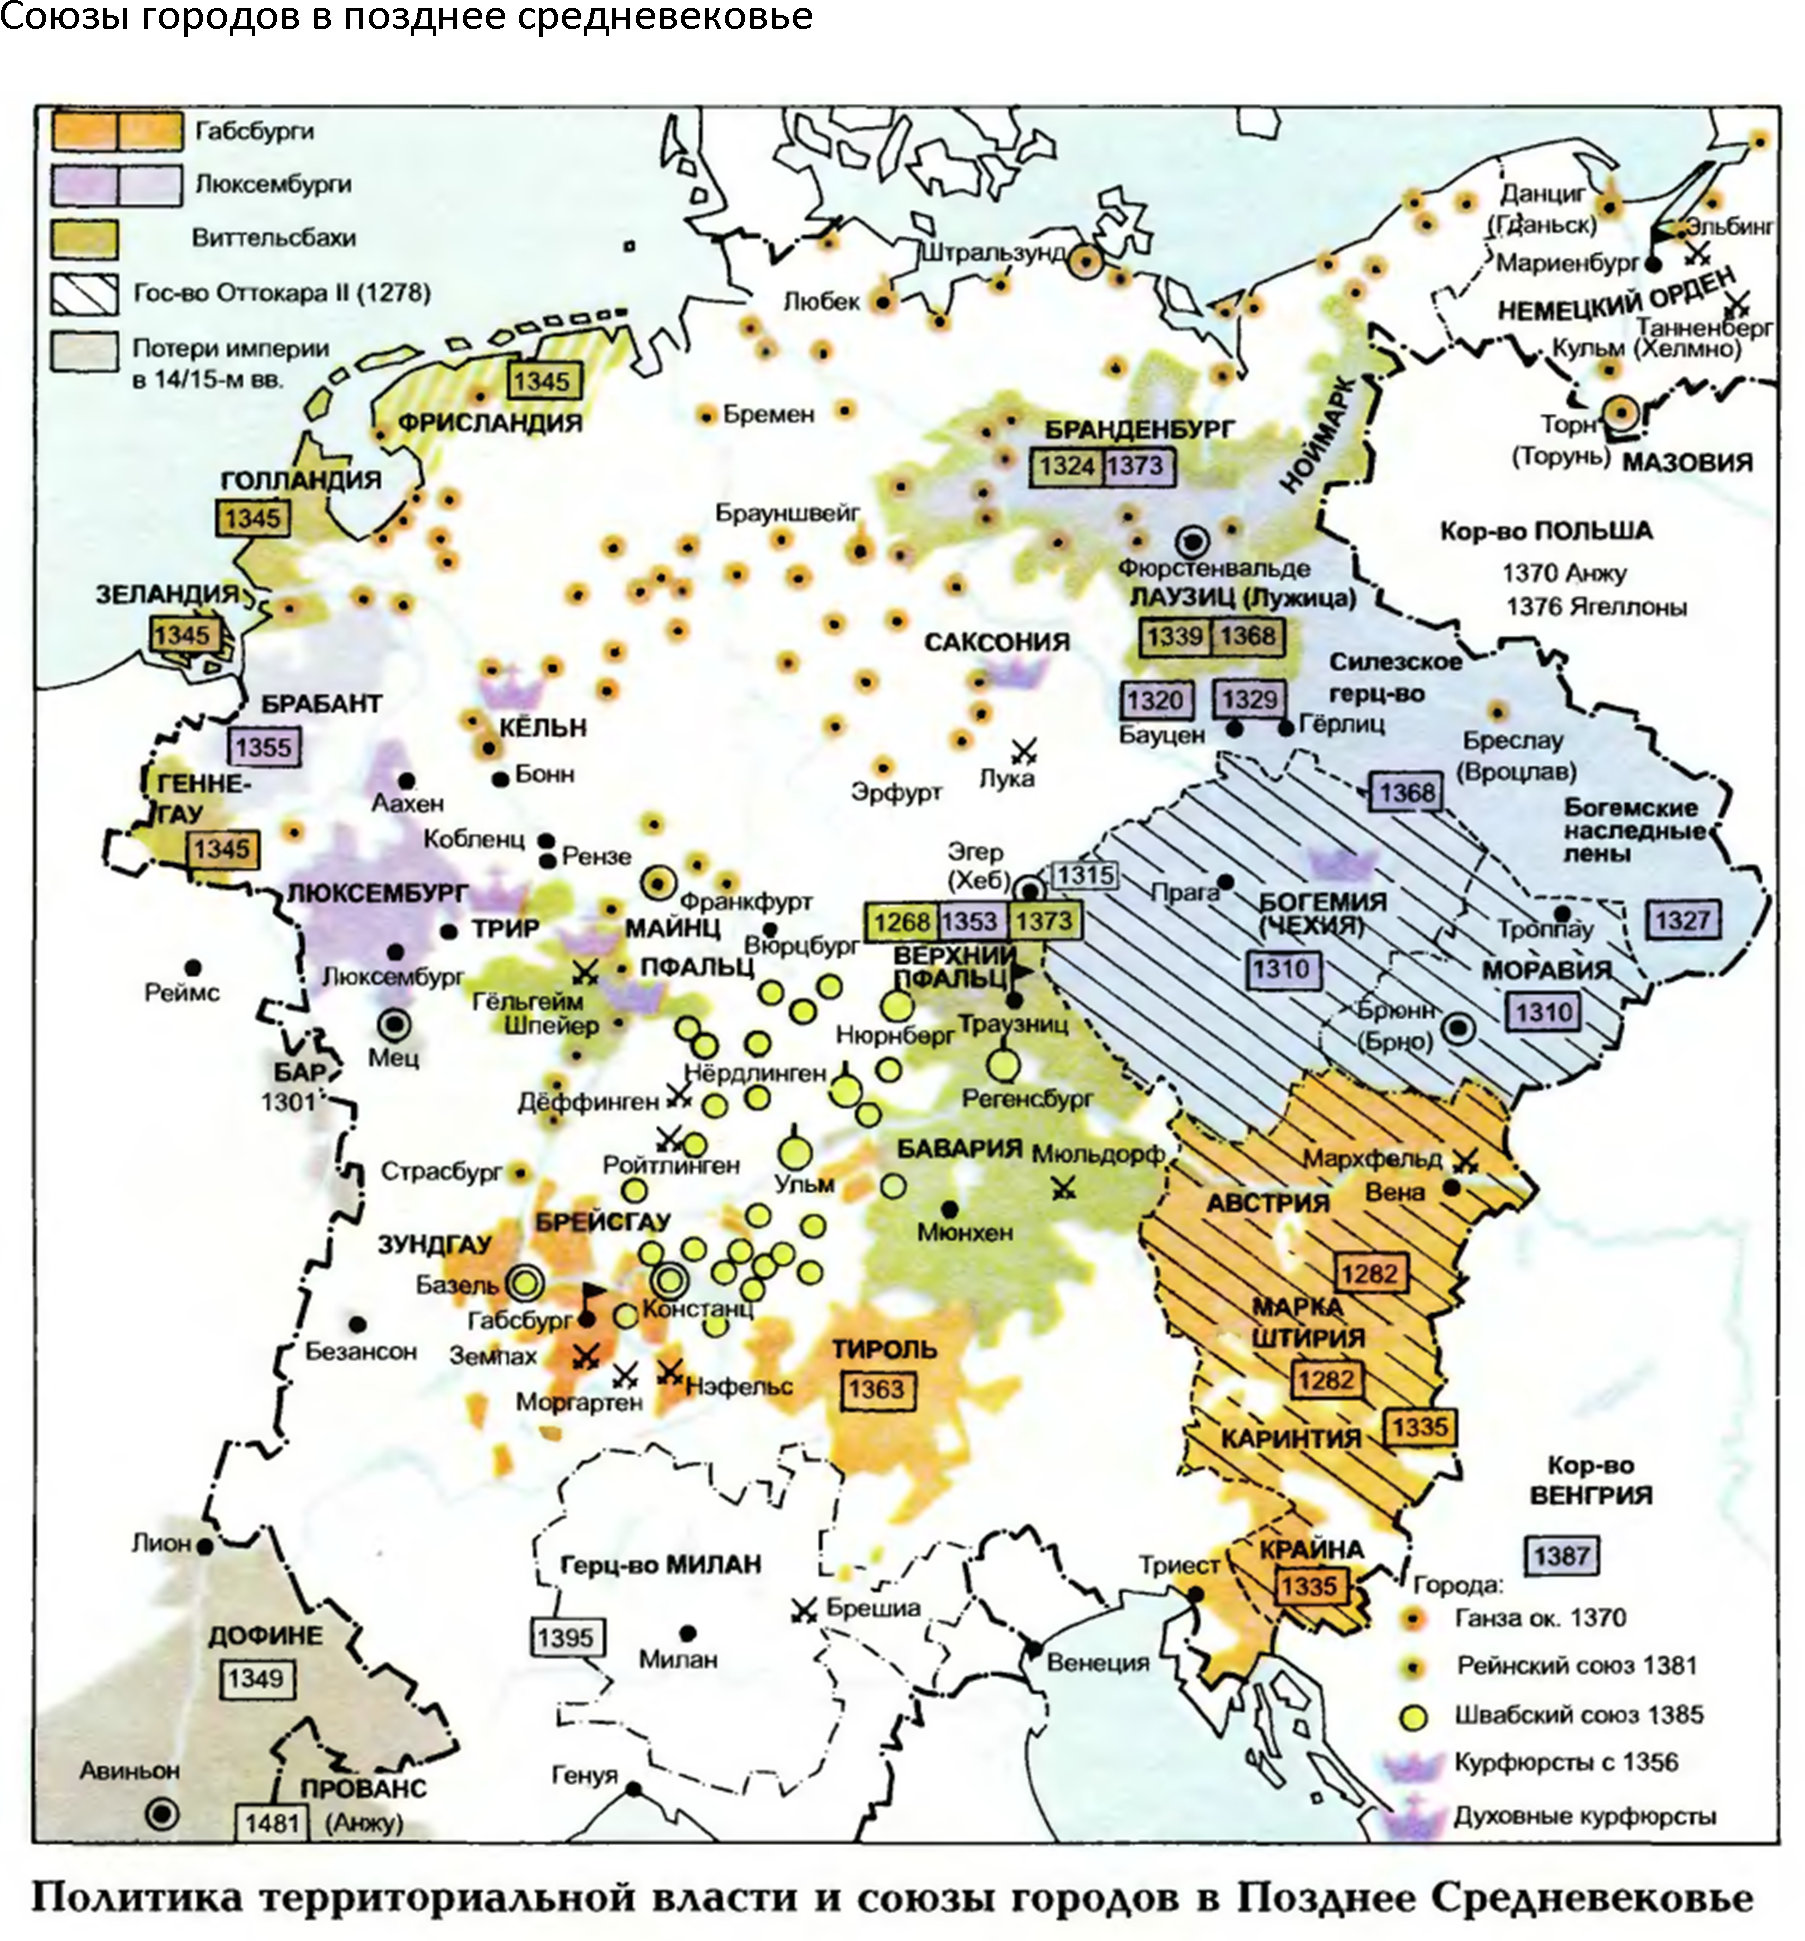 Союзы городов в позднее средневековье